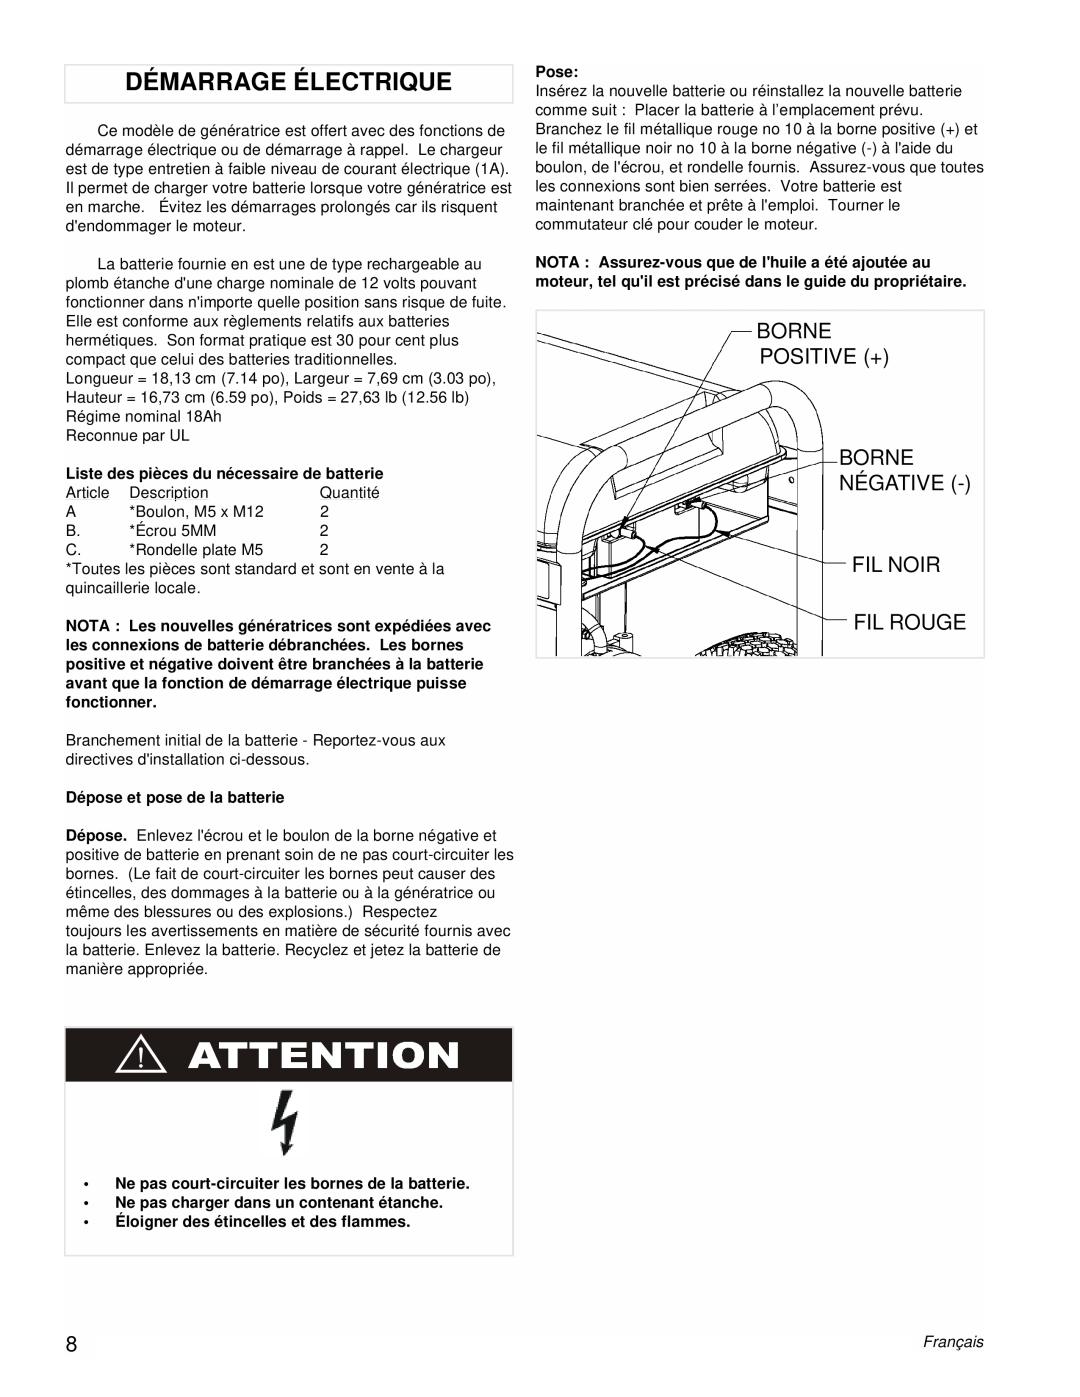 Powermate PMC496751 manual Démarrage Électrique, Borne Positive + Borne Négative Fil Noir, Fil Rouge, Pose, Français 